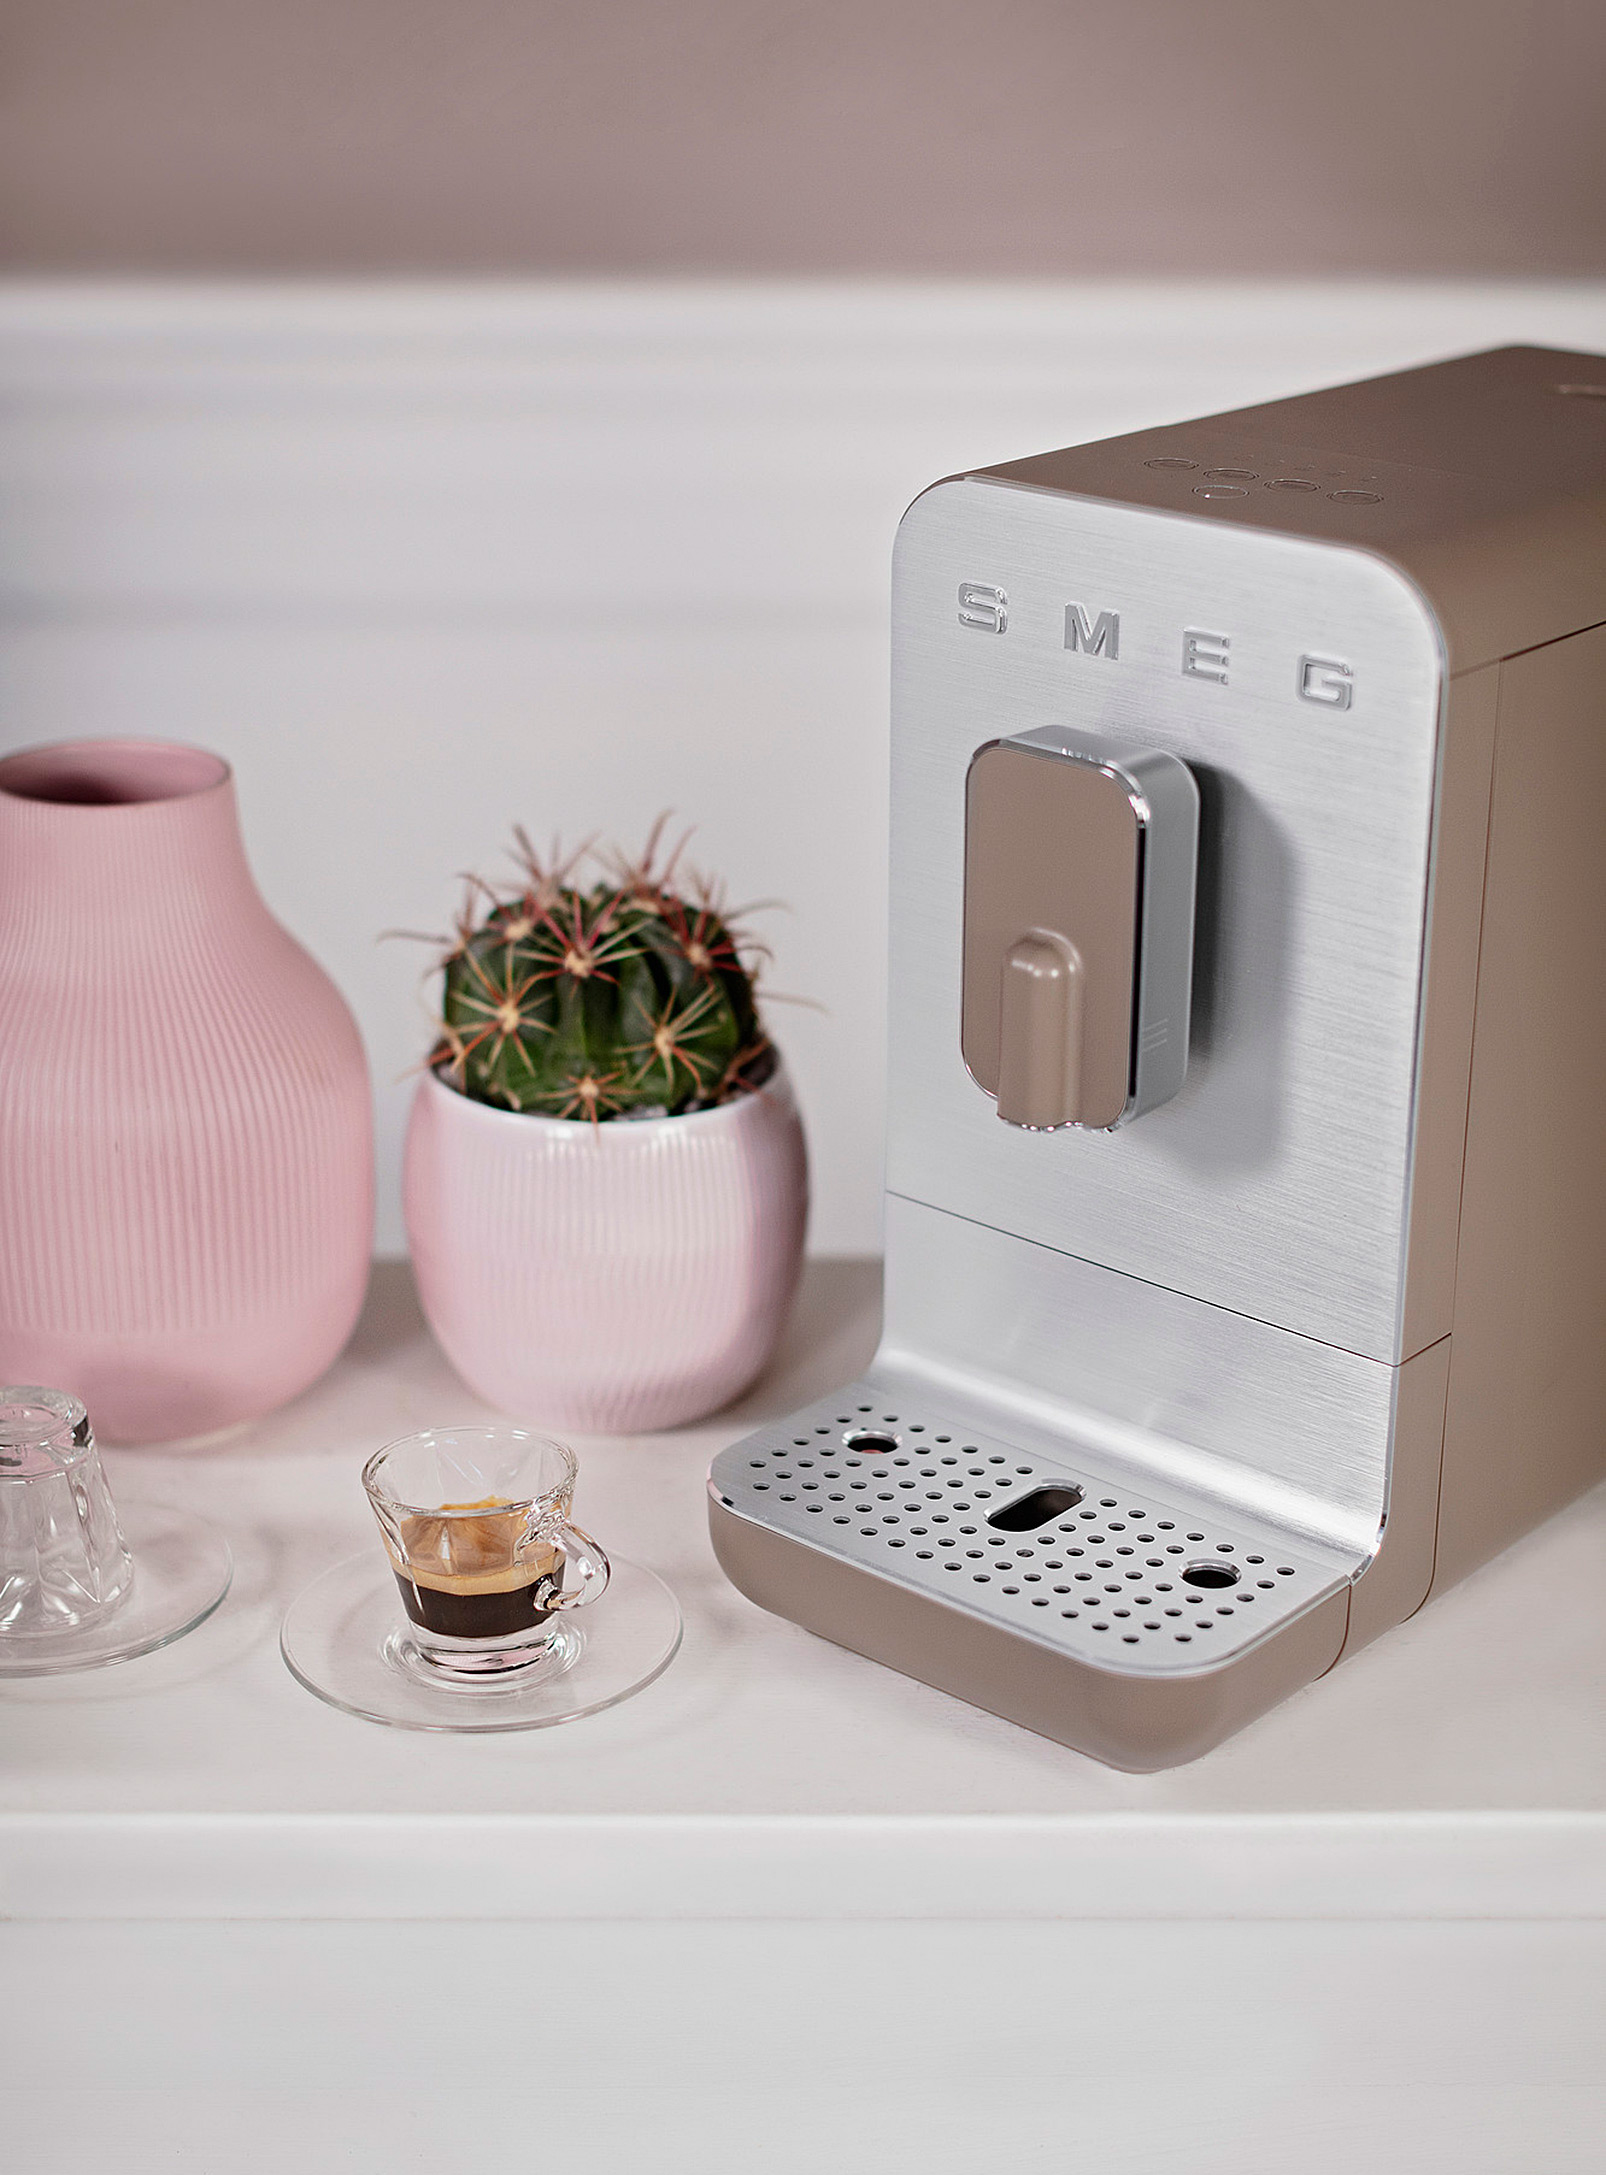 Smeg Automatic Espresso Coffee Machine In Cream Beige